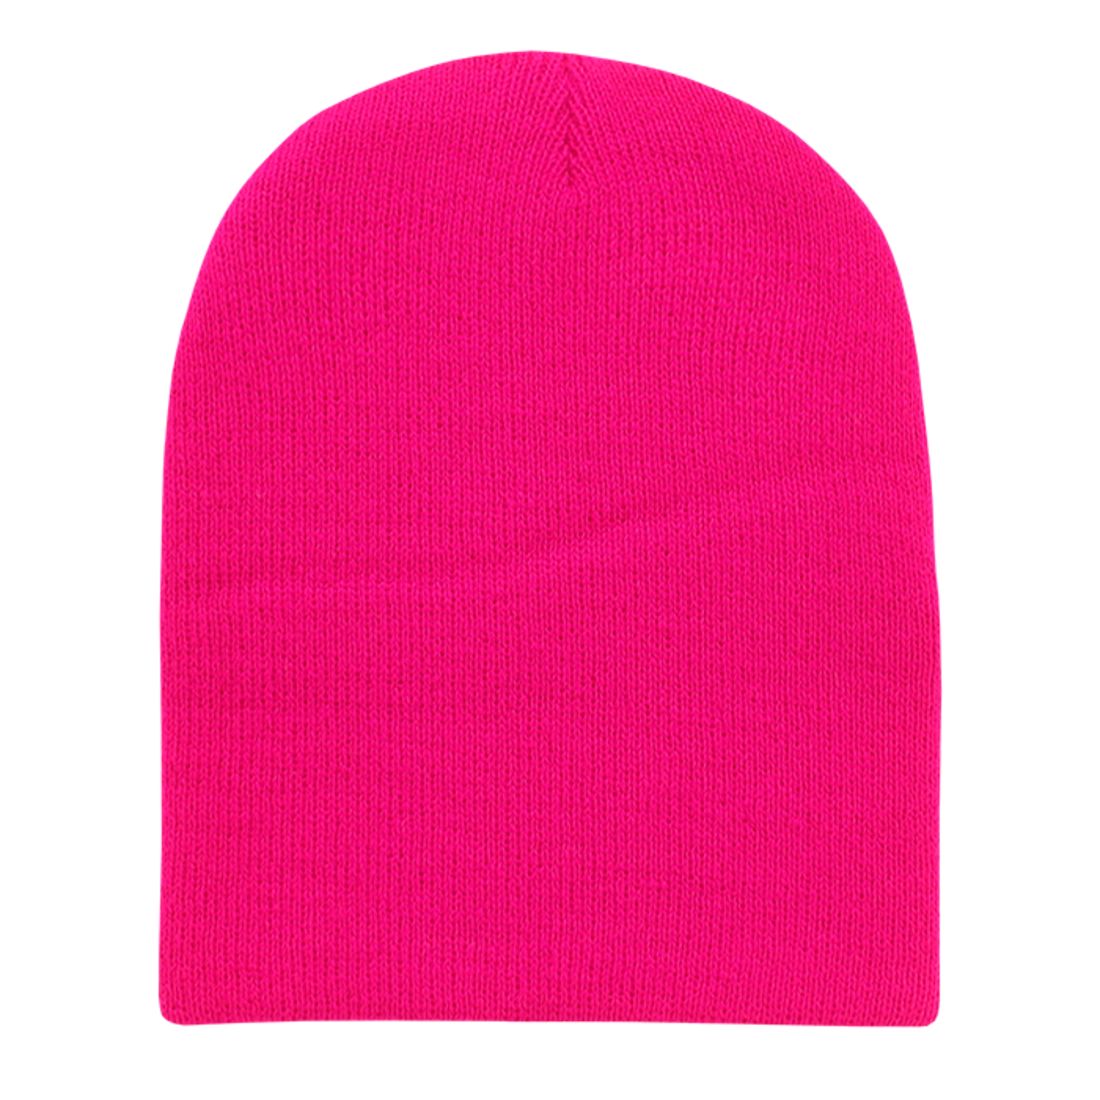 Hot Pink color variant